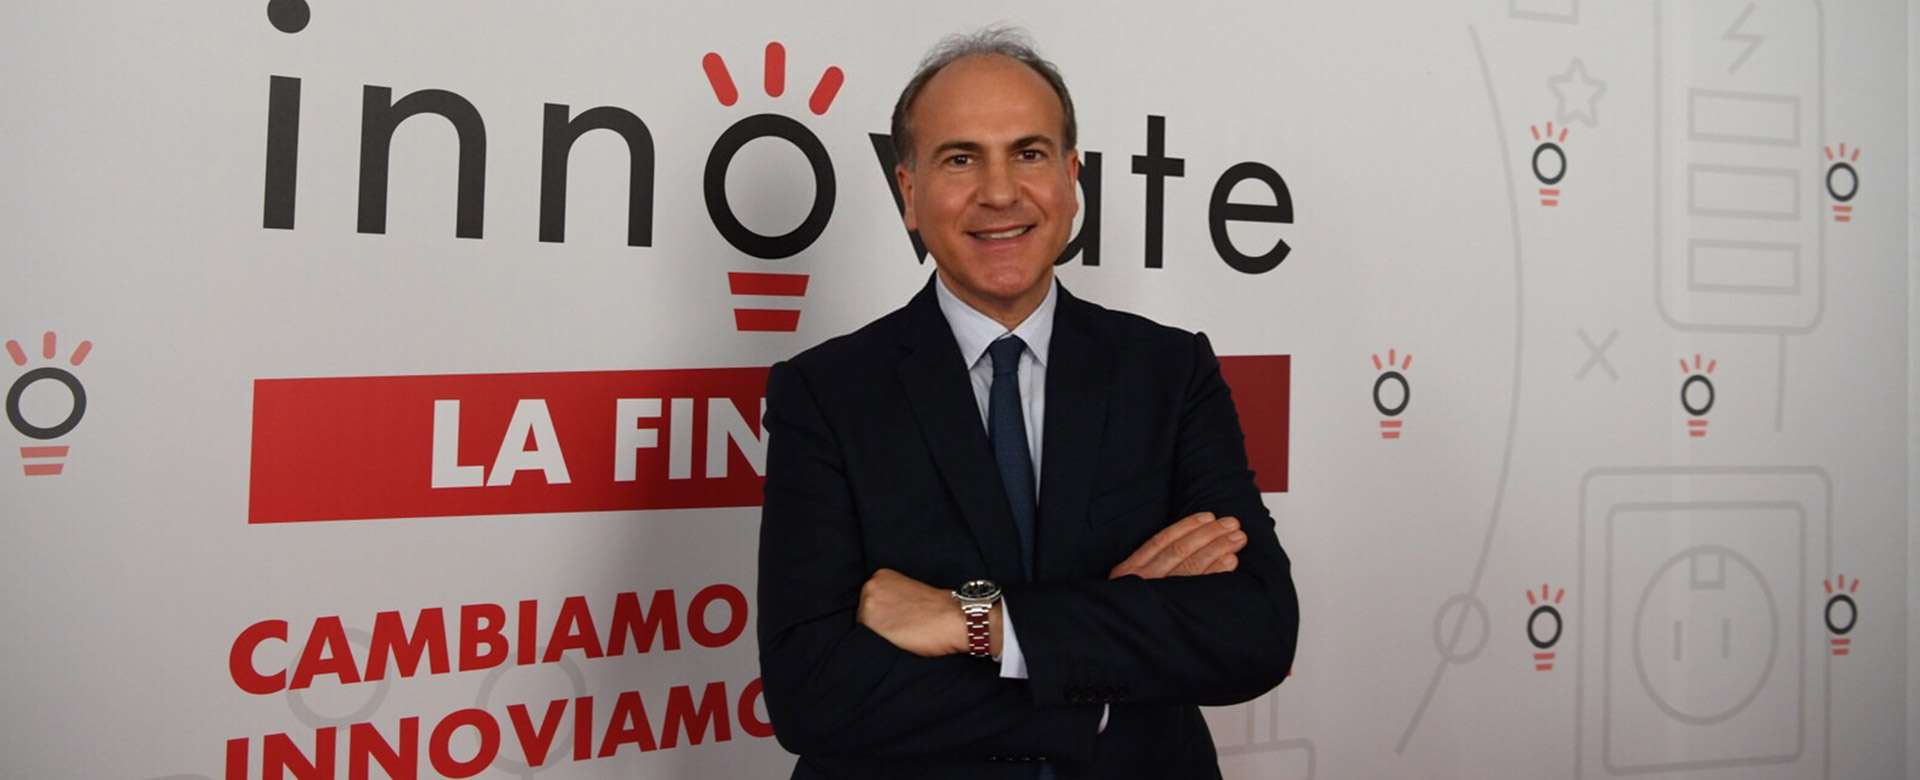 Gianfranco Battisti, amministratore delegato del Gruppo FS Italiane